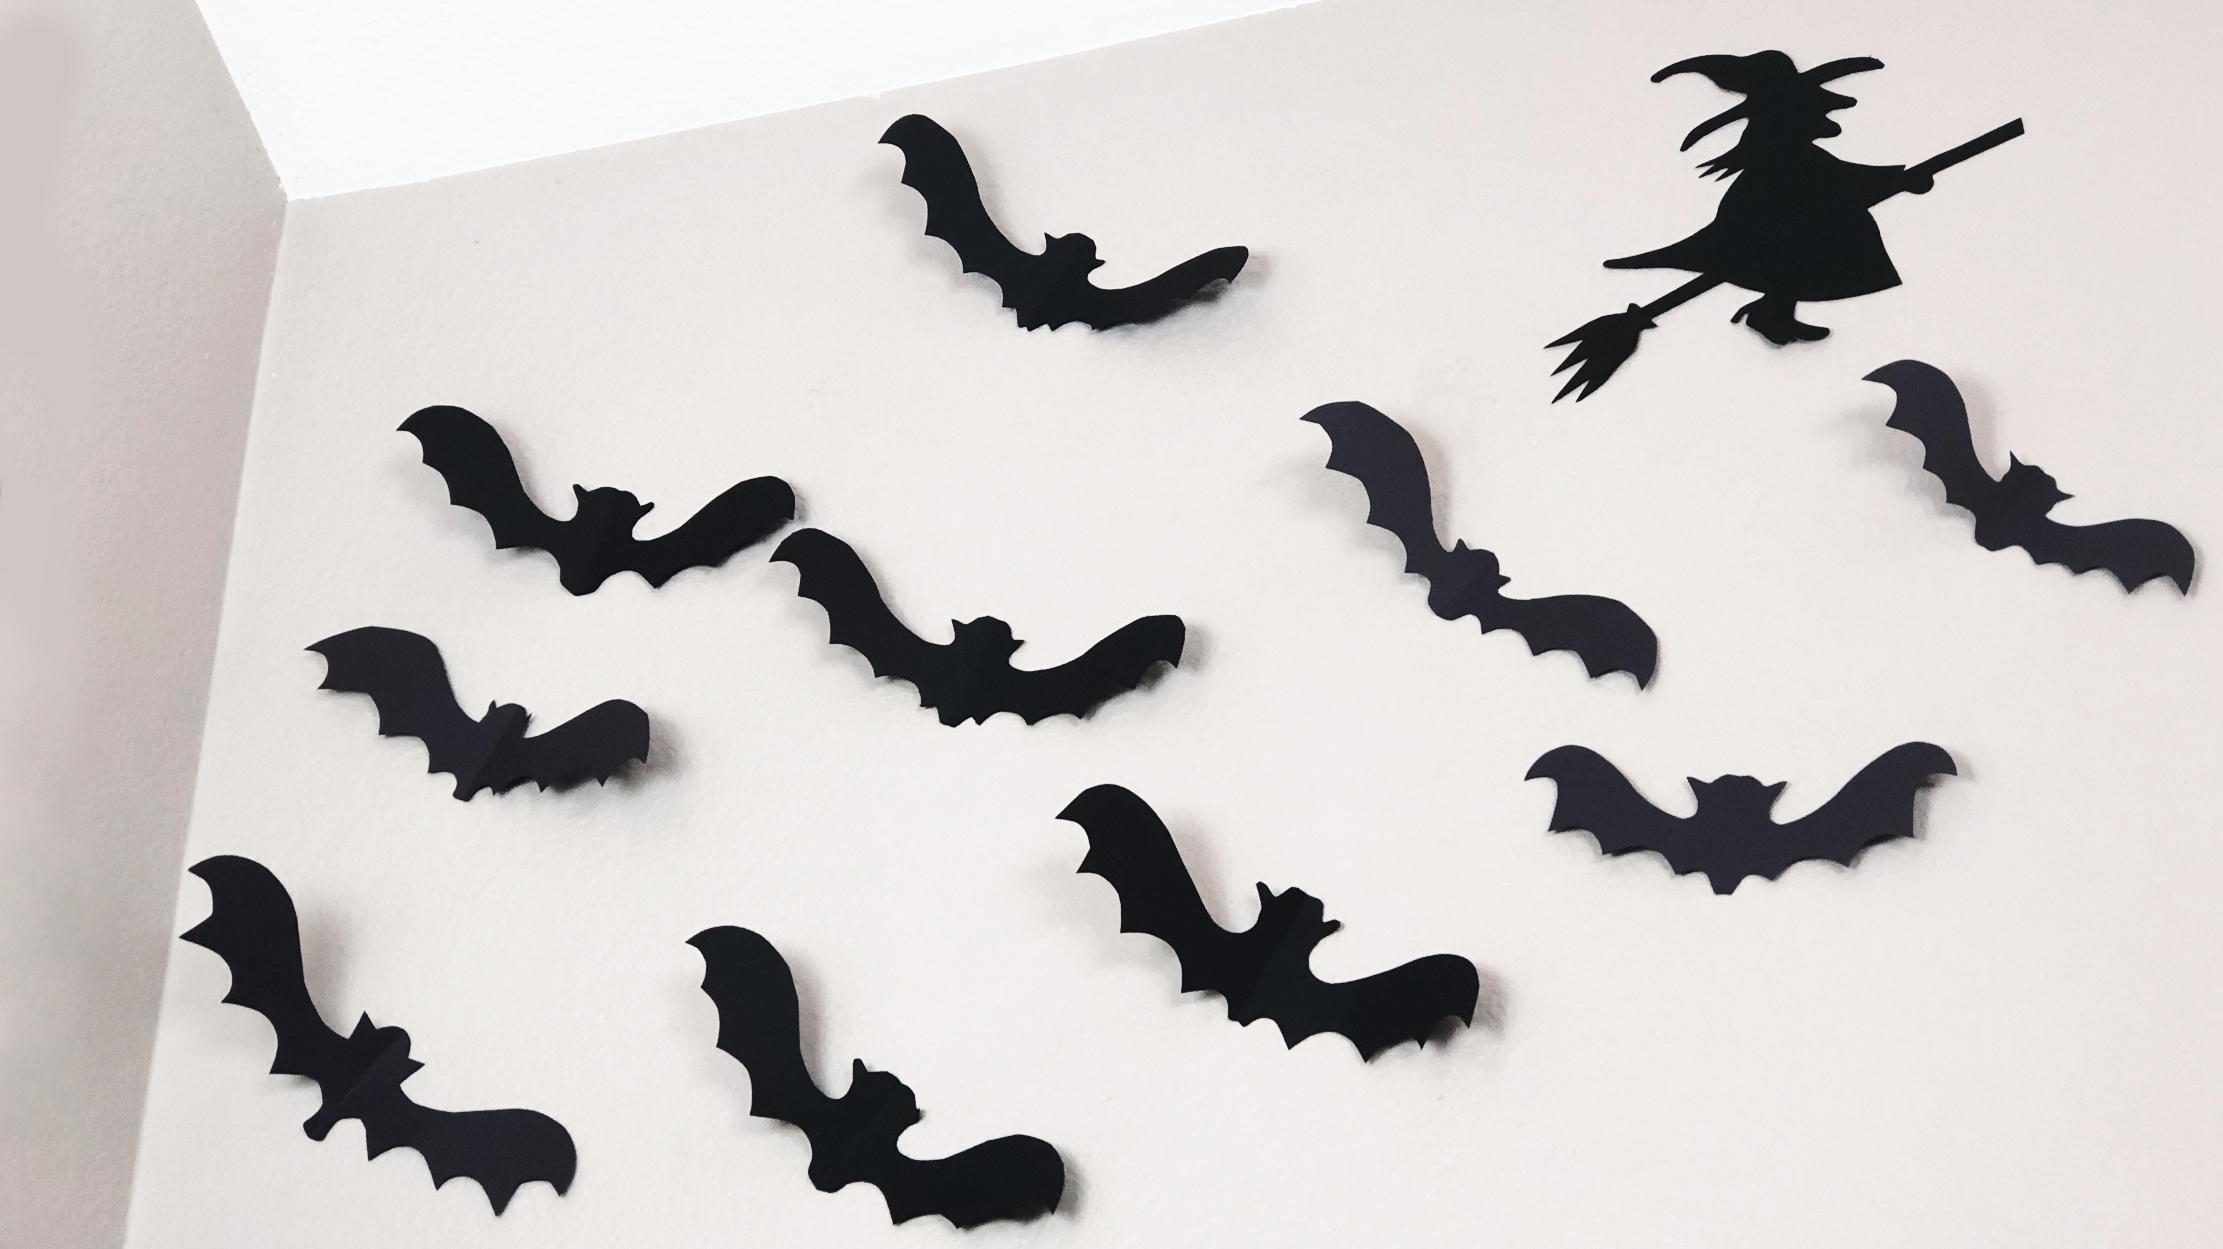 halloween paper models of bats